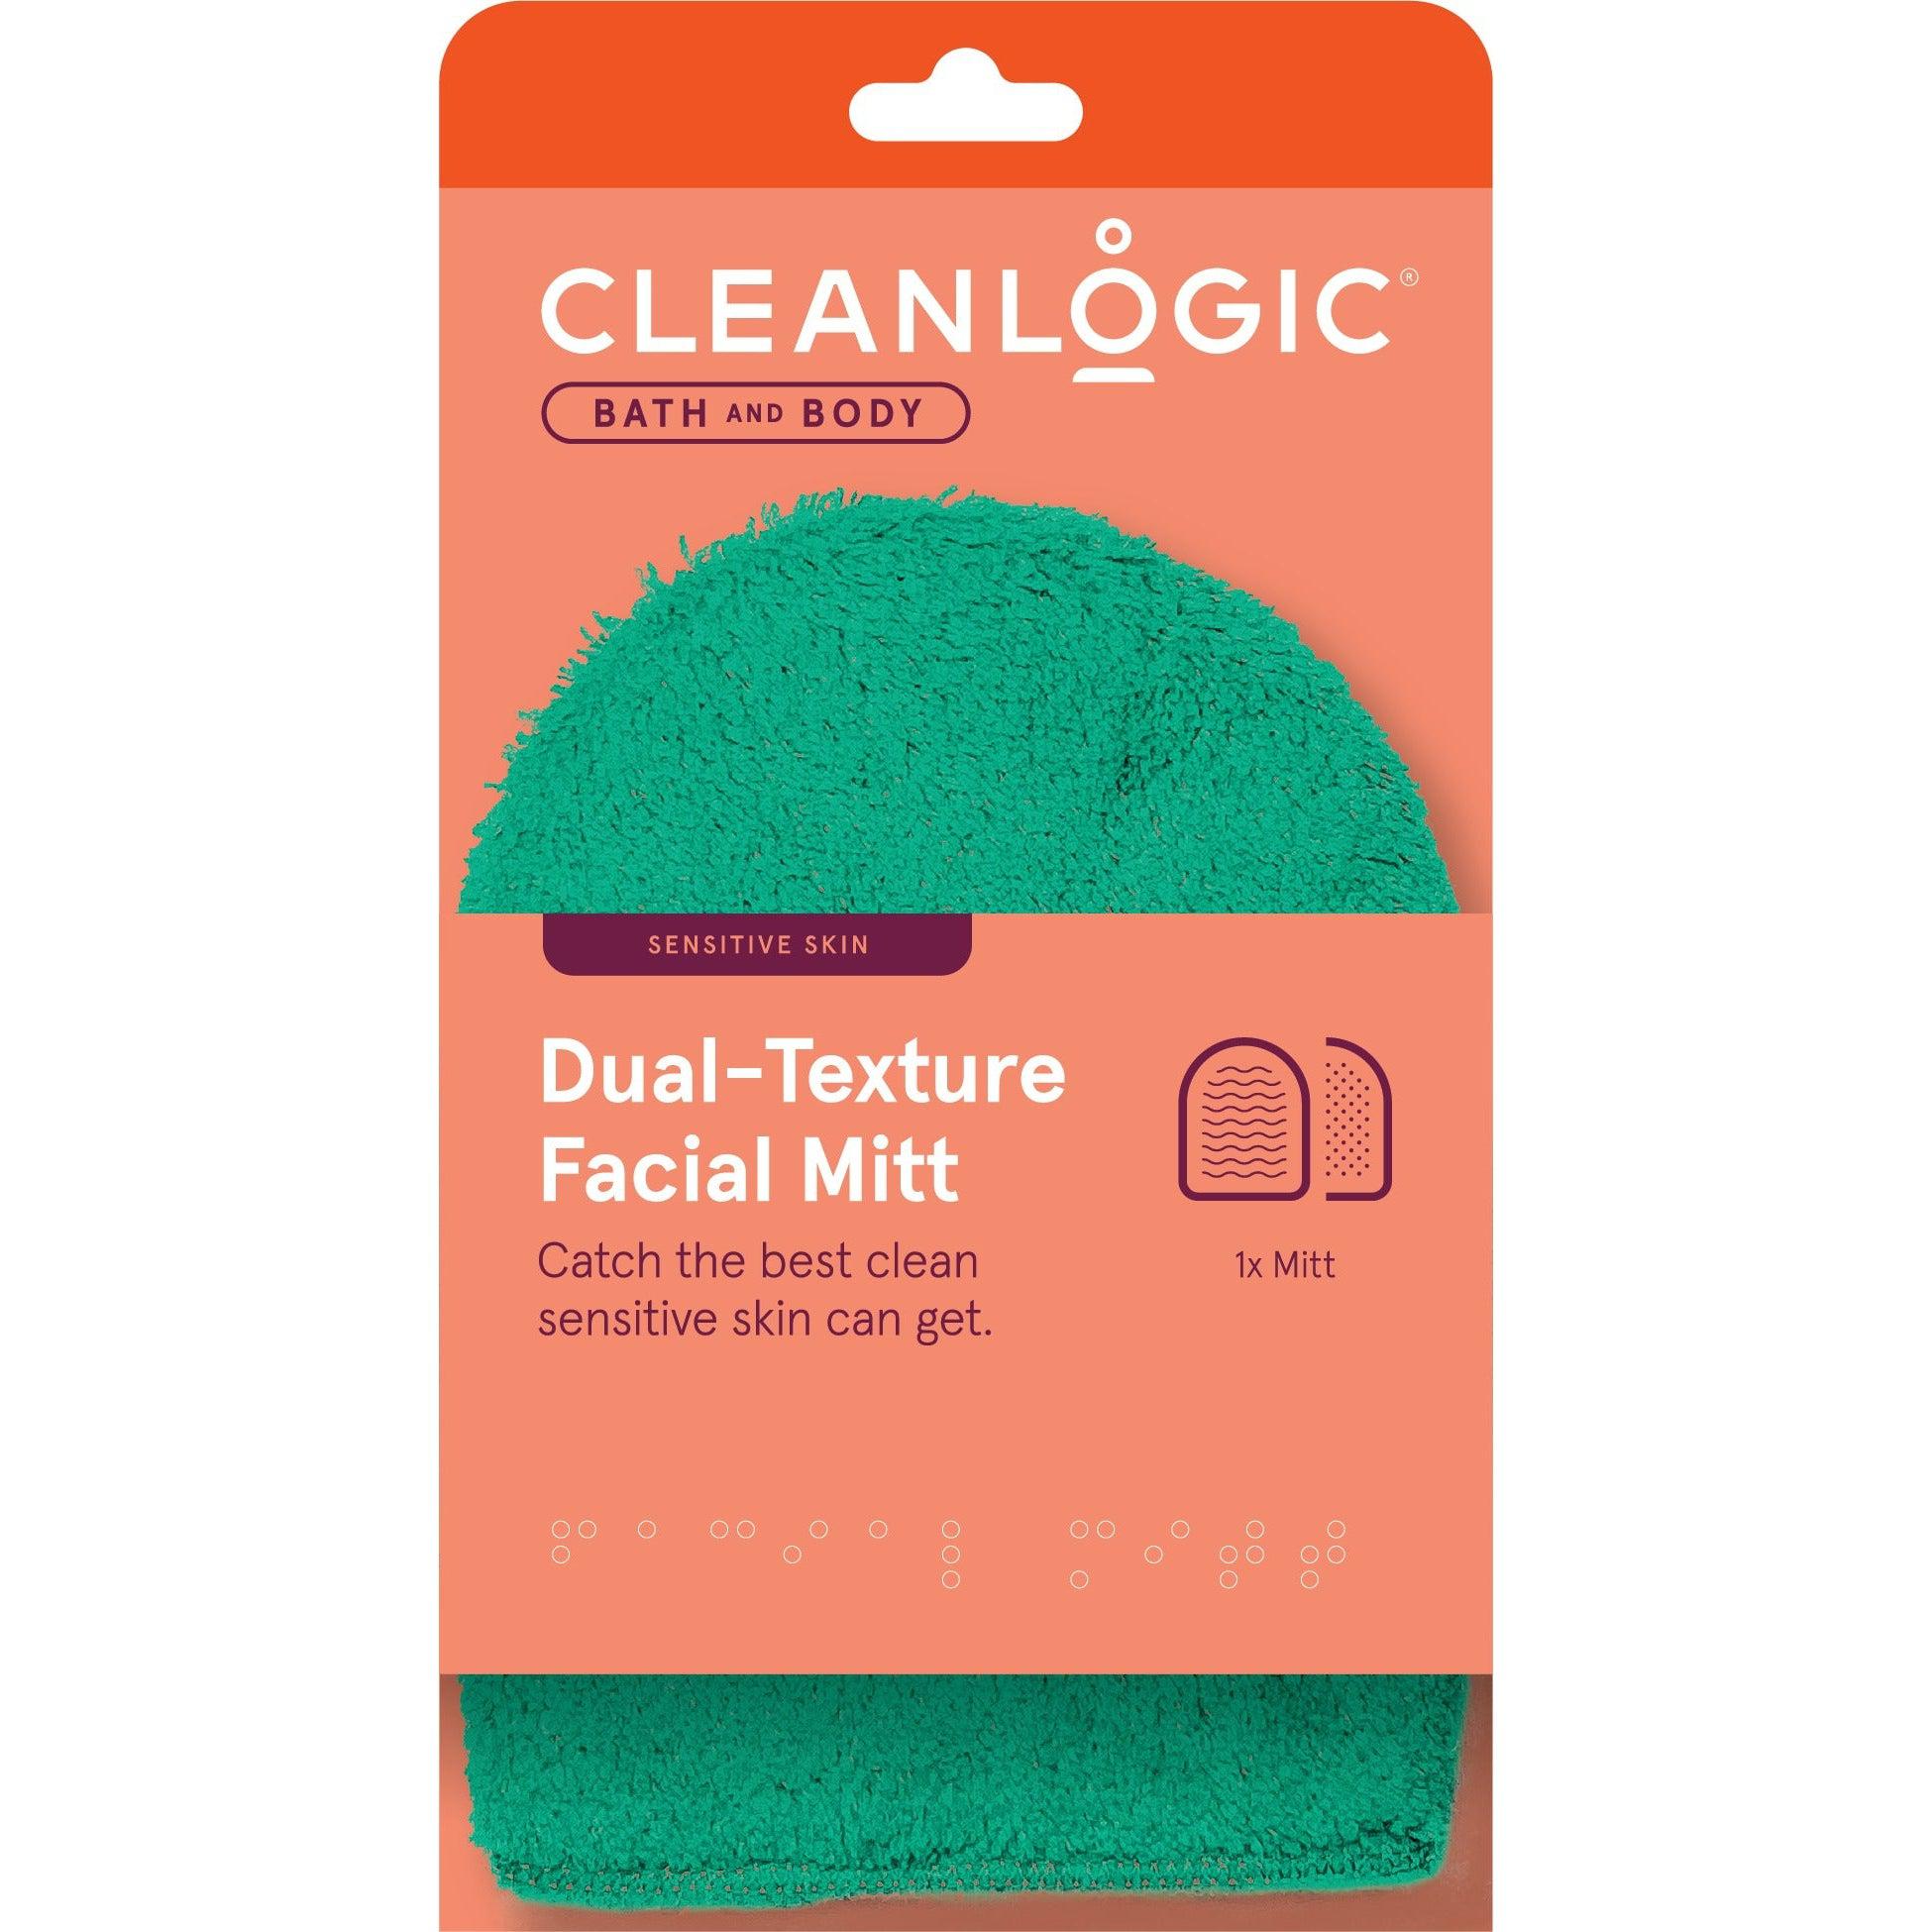 Cleanlogic Dual-Texture Facial Mitt